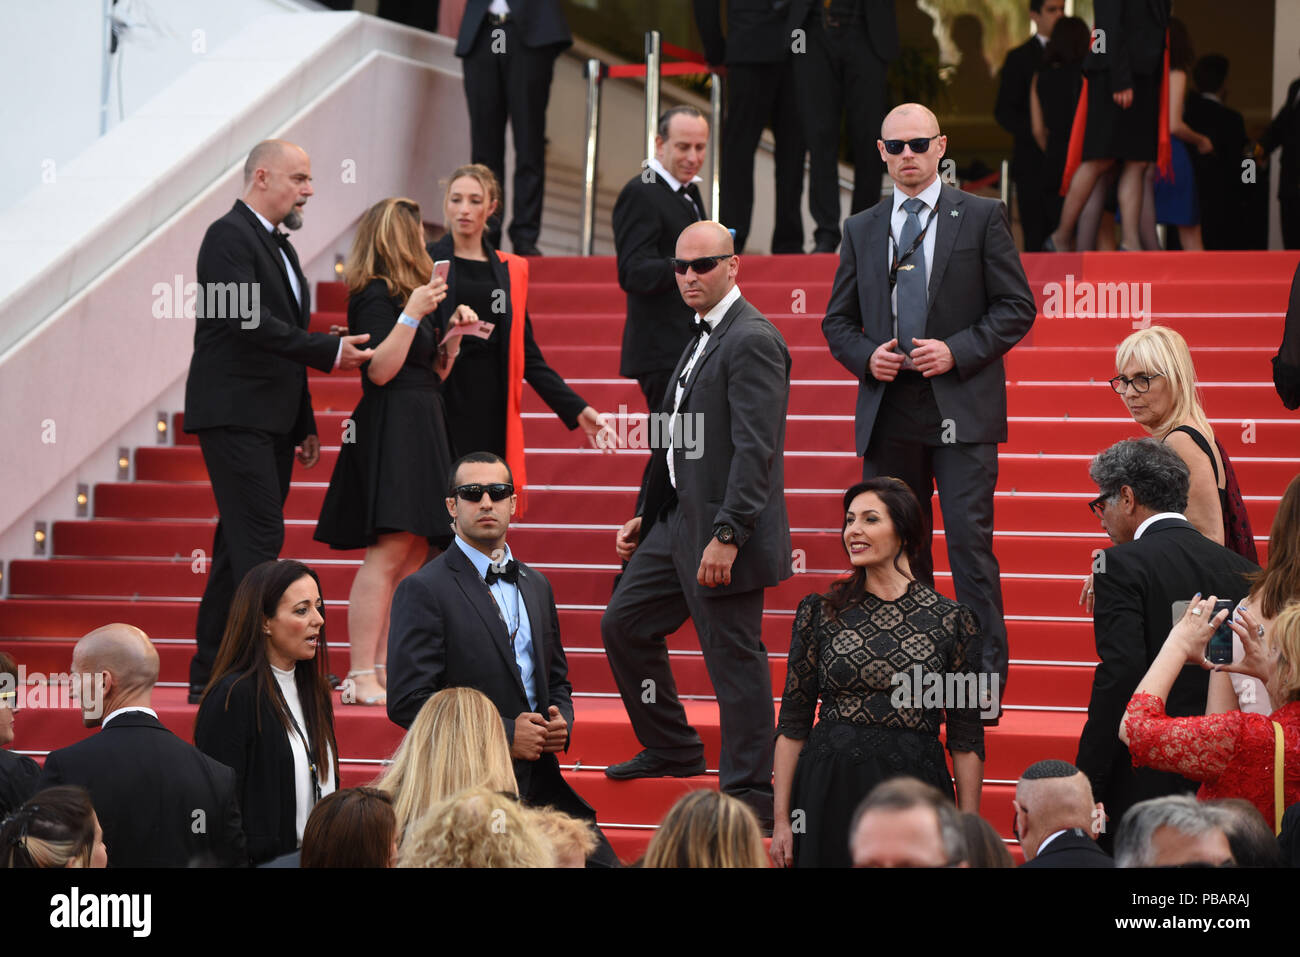 Mai 16, 2016 - Cannes, Frankreich: Miri Regev die "Lieben" Premiere während des 69. Filmfestival in Cannes teil. La ministre israelienne Miri Regev, entouree de gardes du corps, lors du 69eme Festival de Cannes. *** Frankreich/KEINE VERKÄUFE IN DEN FRANZÖSISCHEN MEDIEN *** Stockfoto